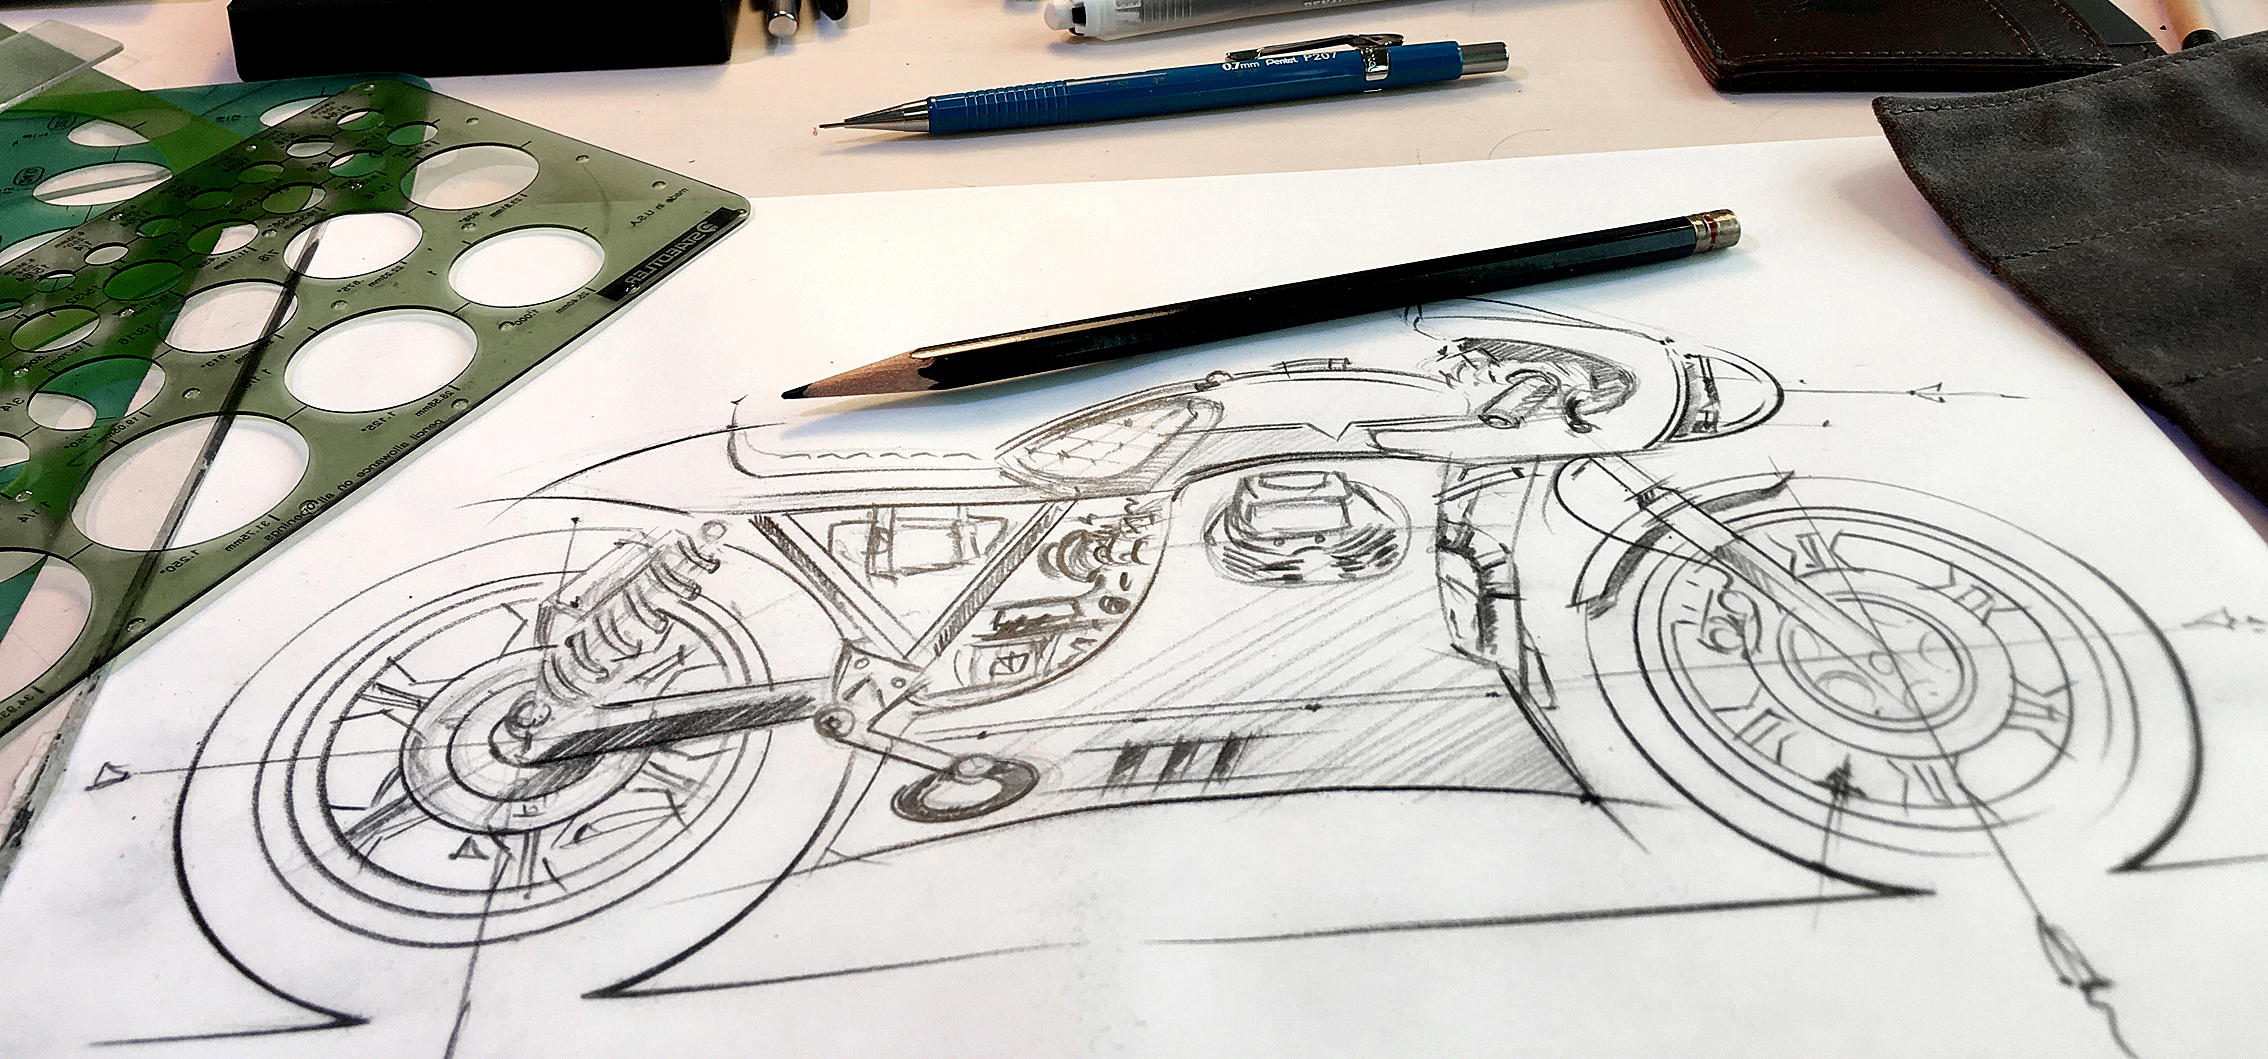 Moto Guzzi V850 Le Mans sketches